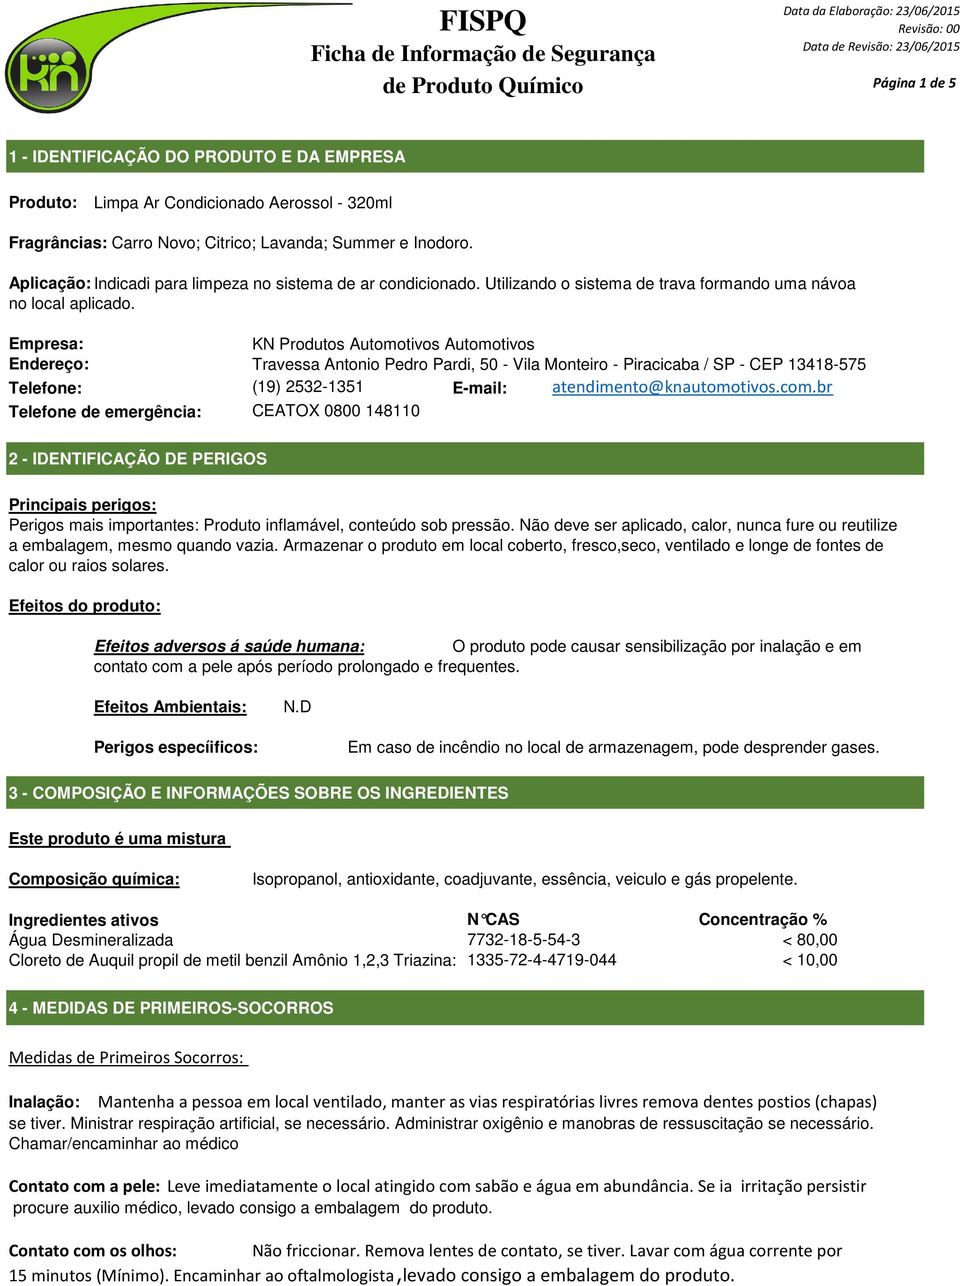 Empresa: KN Produtos Automotivos Automotivos Endereço: Travessa Antonio Pedro Pardi, 50 - Vila Monteiro - Piracicaba / SP - CEP 13418-575 Telefone: (19) 2532-1351 E-mail: atendimento@knautomotivos.